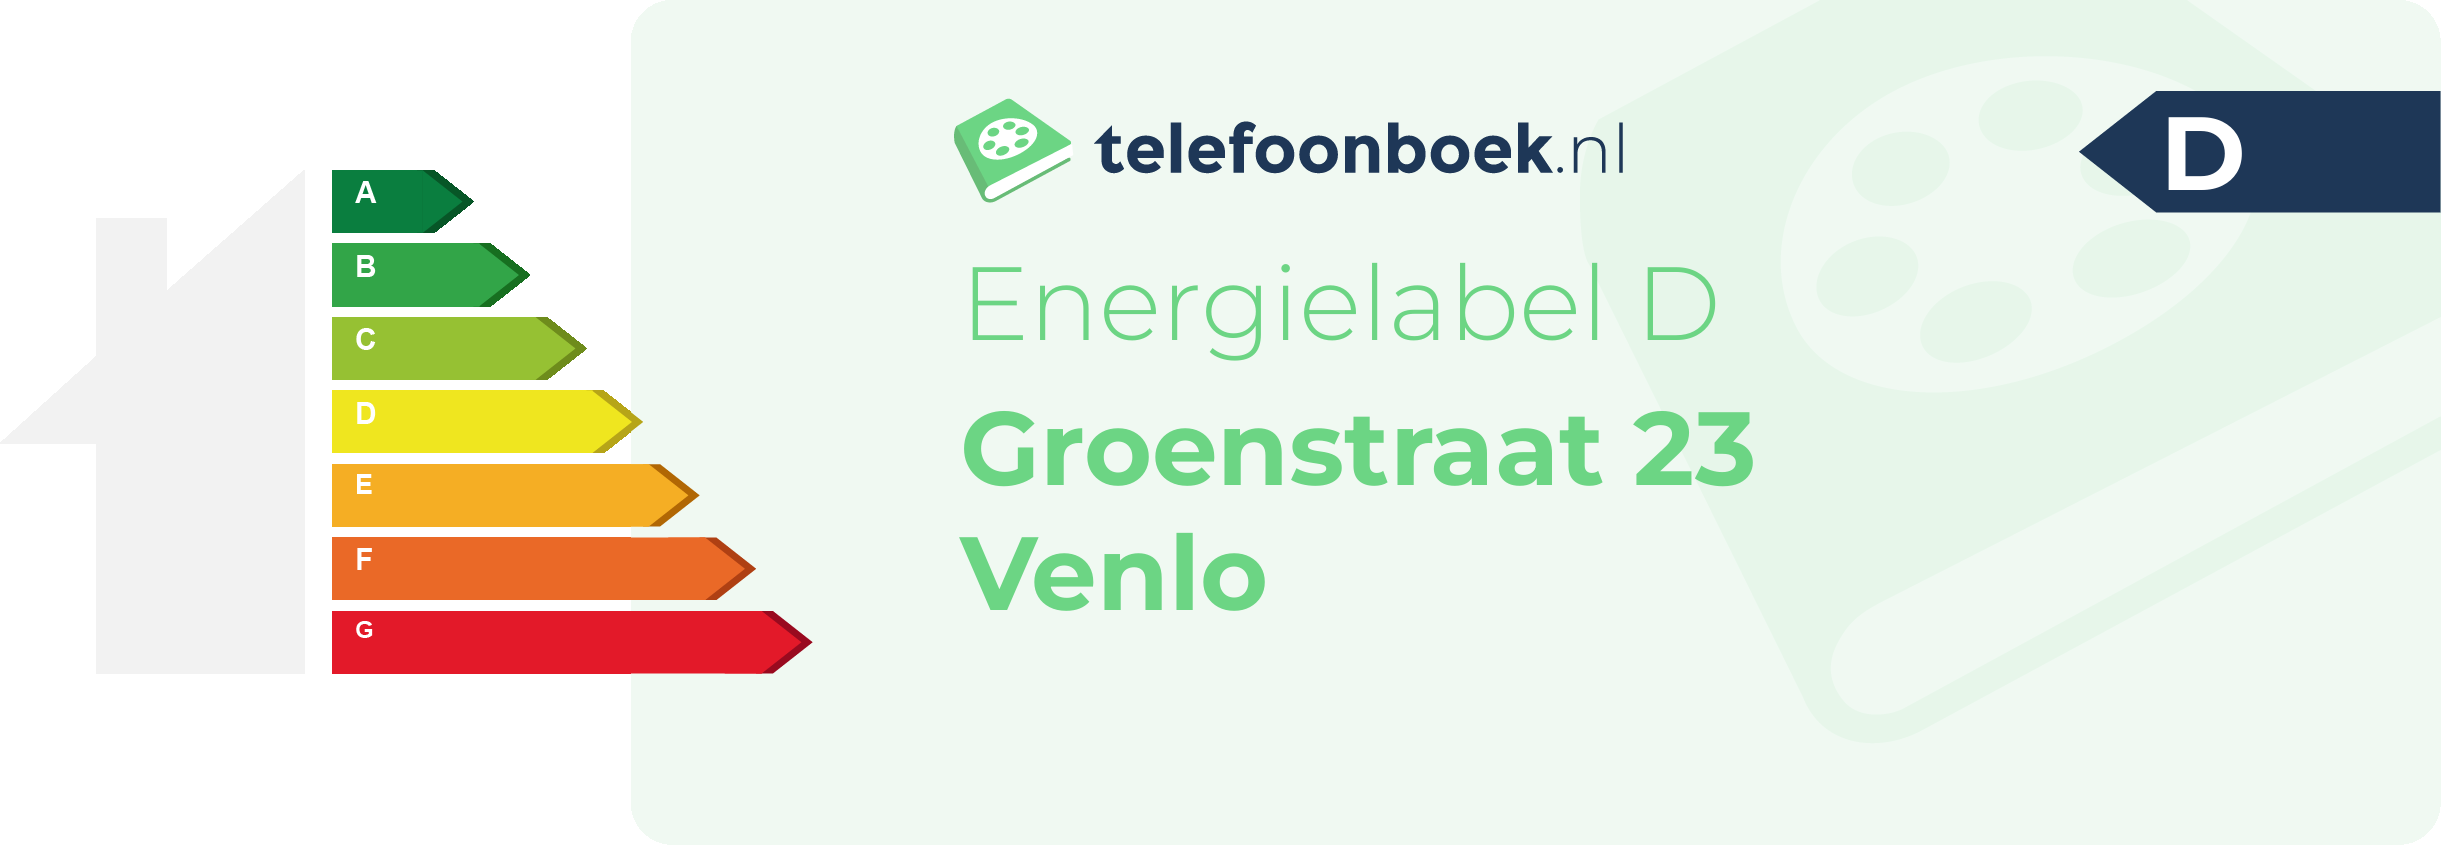 Energielabel Groenstraat 23 Venlo